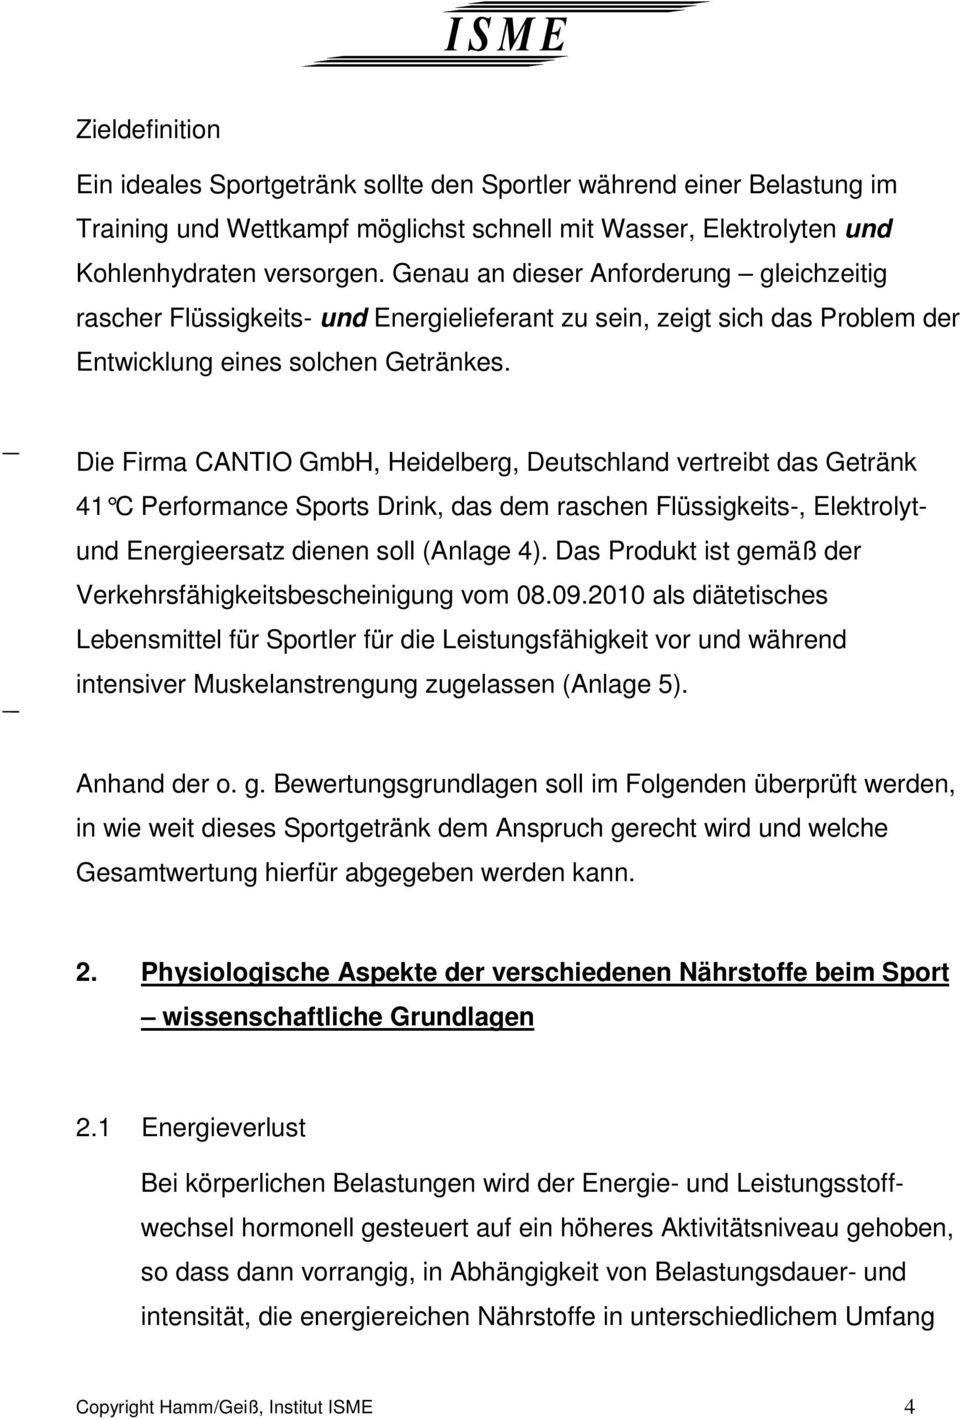 Die Firma CANTIO GmbH, Heidelberg, Deutschland vertreibt das Getränk 41 C Performance Sports Drink, das dem raschen Flüssigkeits-, Elektrolytund Energieersatz dienen soll (Anlage 4).